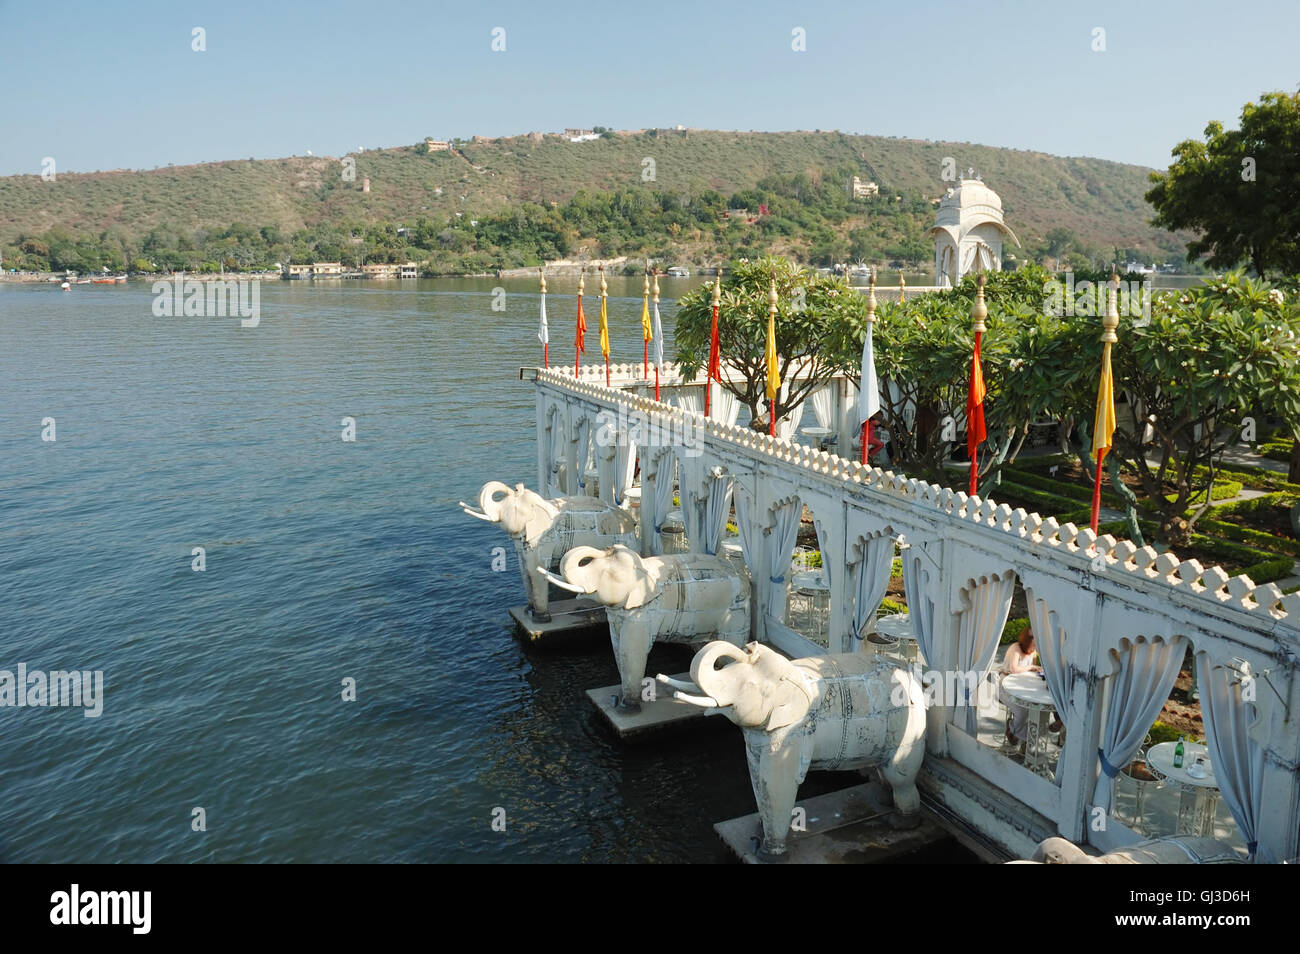 Summer palace at Jag Mandir island on Pichola lake,Udaipur, India Stock Photo